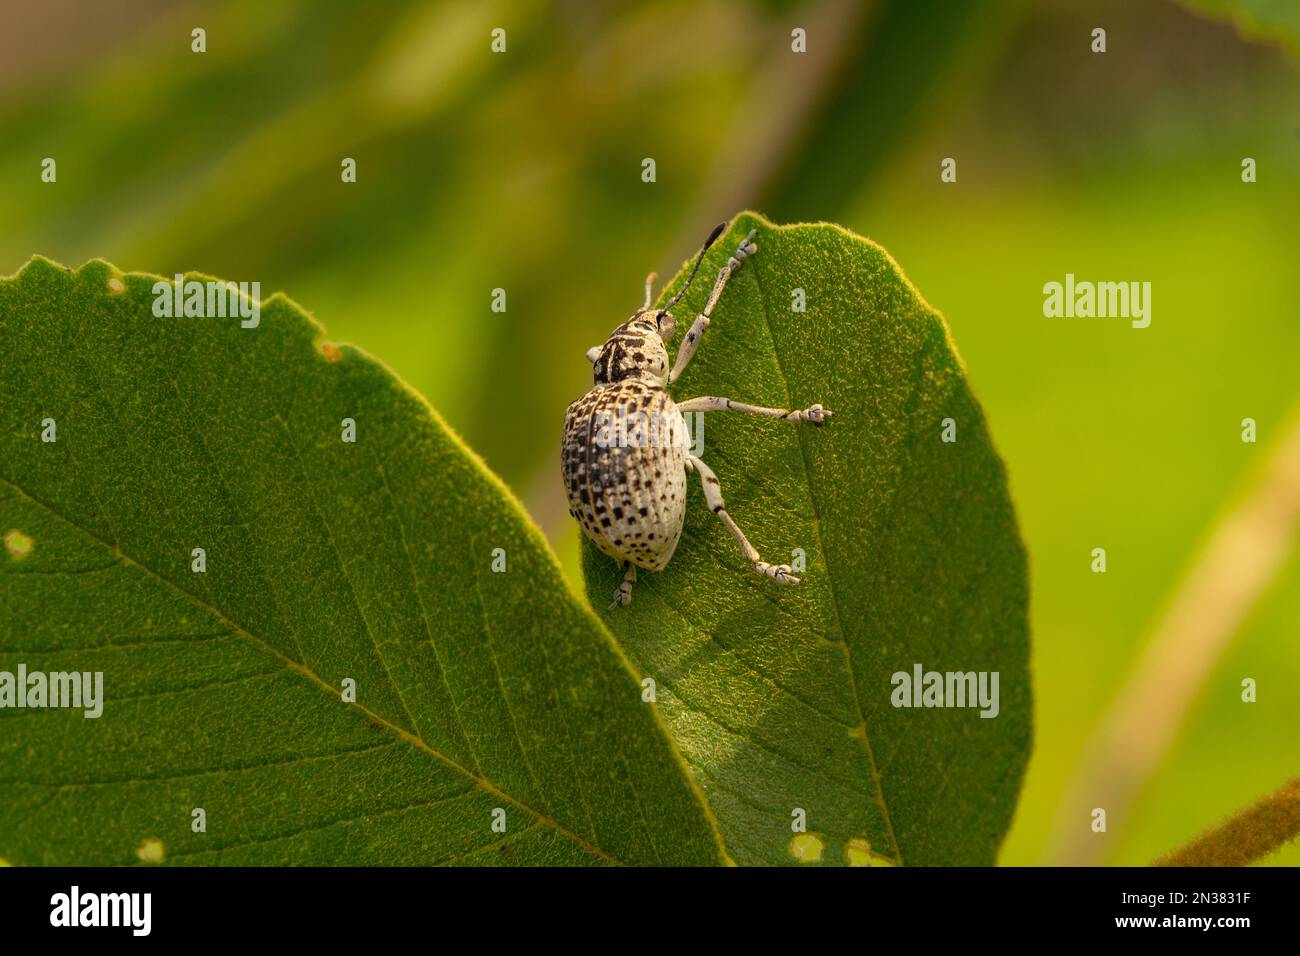 Goiania, Goiás, Brasilien – 07. November 2021: Cydianerus latruncularius, coleóptera. Ein weißer Käfer, der am Rande eines grünen Blattes spaziert. Stockfoto